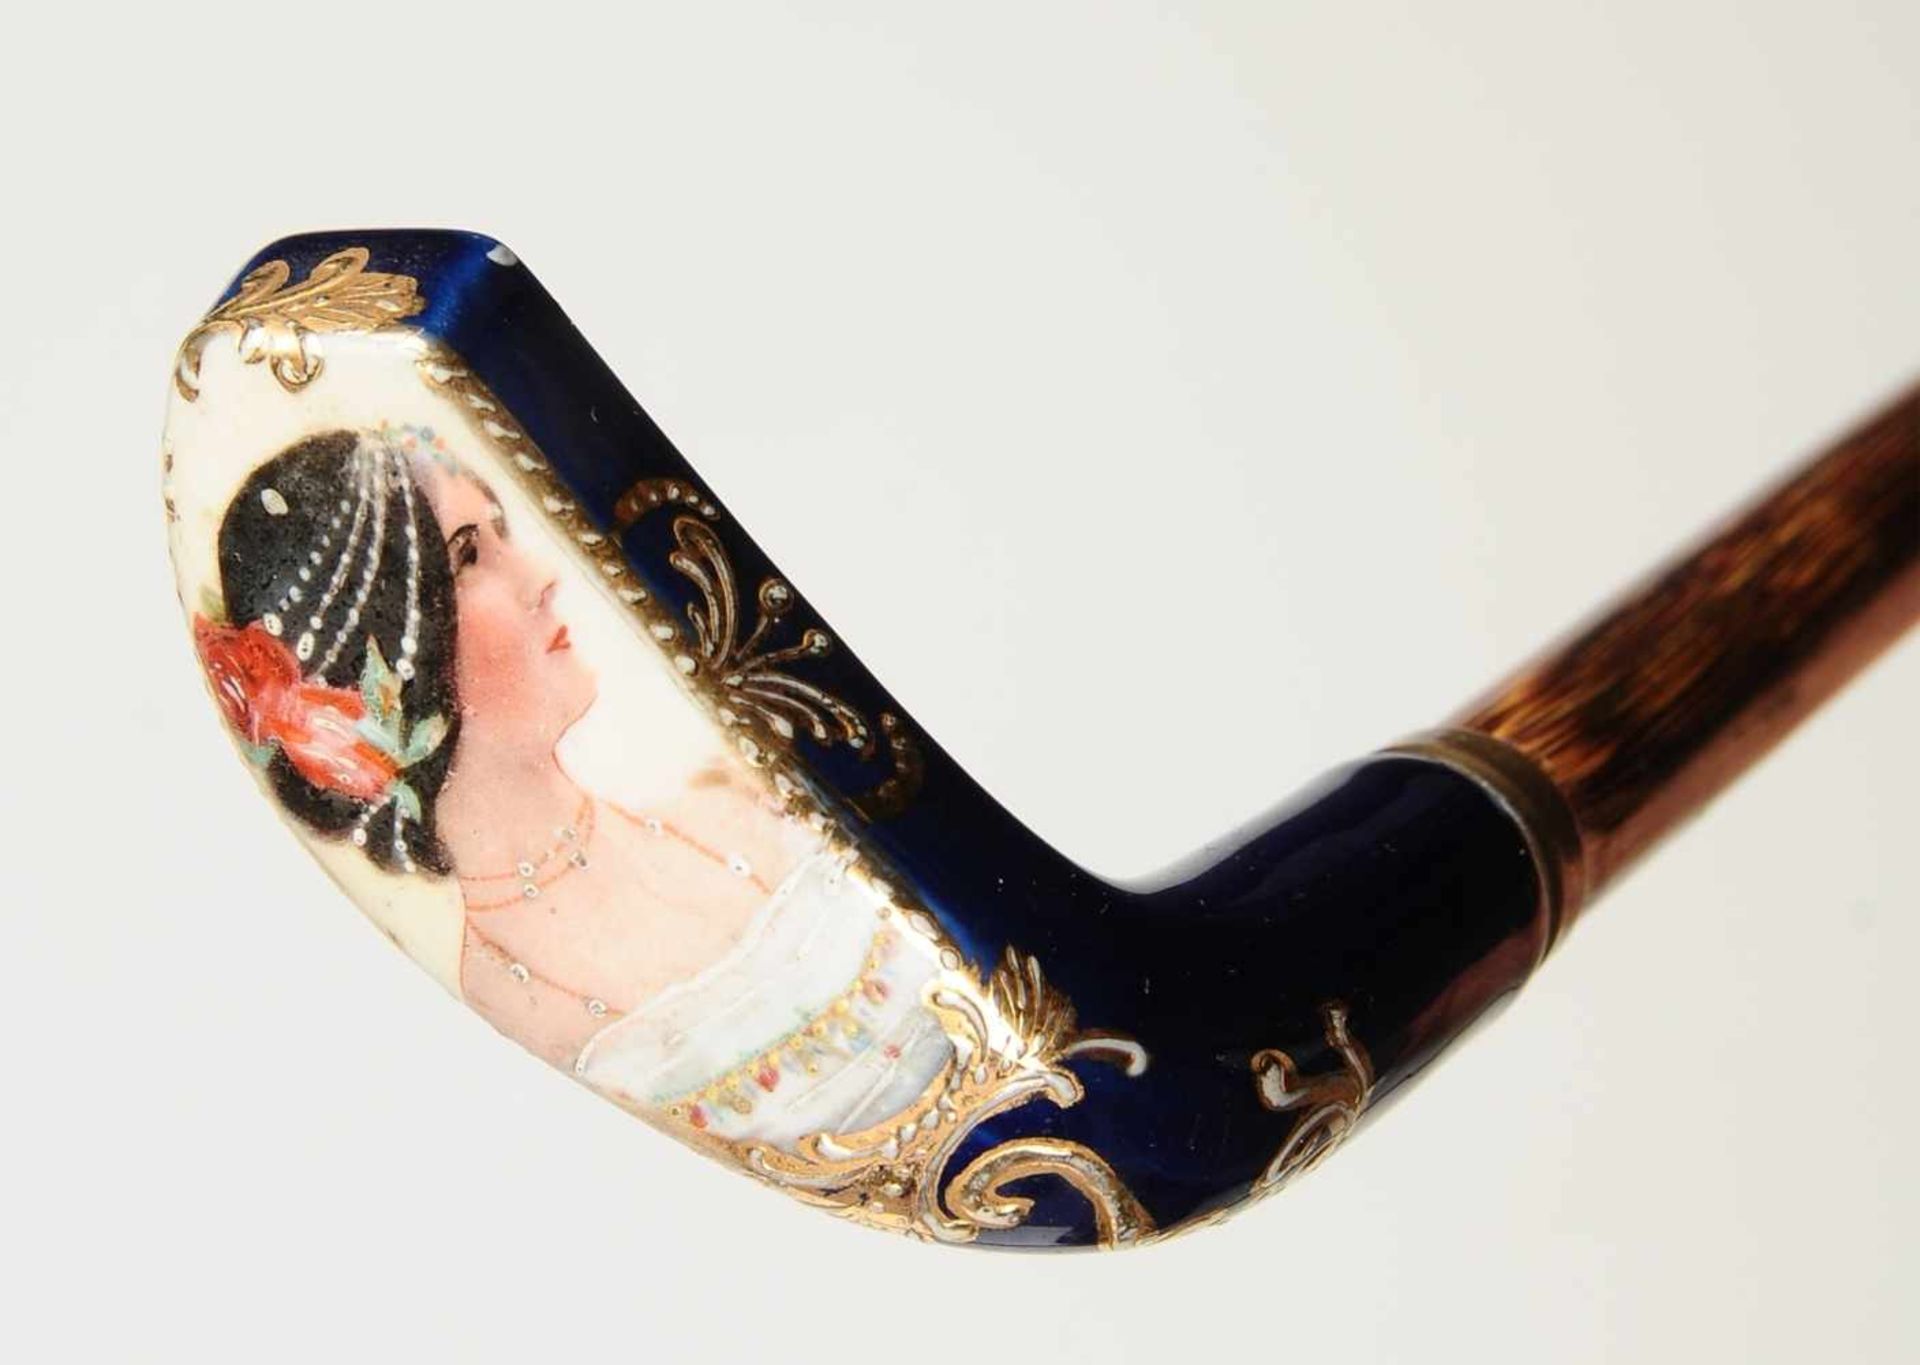 Flanierstock Griff aus Porzellan mit Profilbildnis einer dunkelhaarigen Dame, eingefasst in goldenes